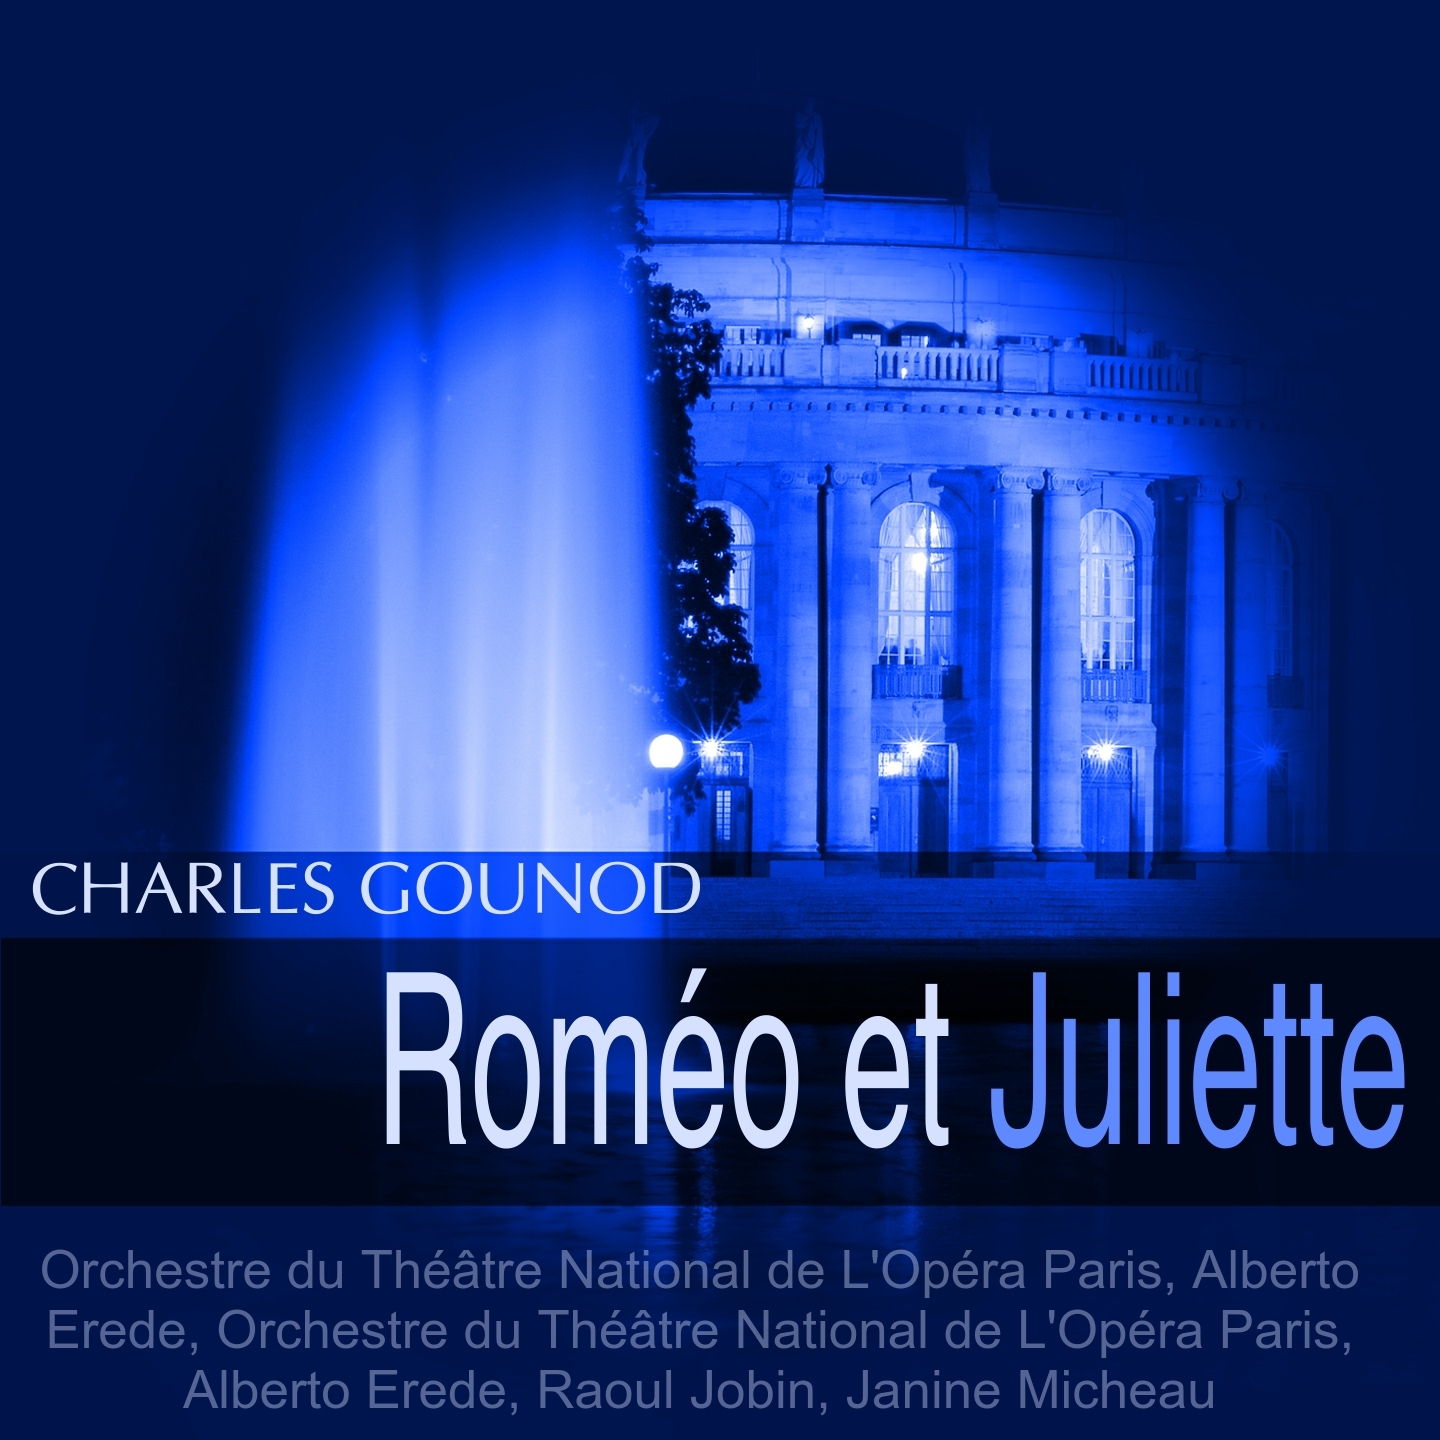 Rome o et Juliette, Act IV: Entr' acte. " Le sommeil de Juliette"